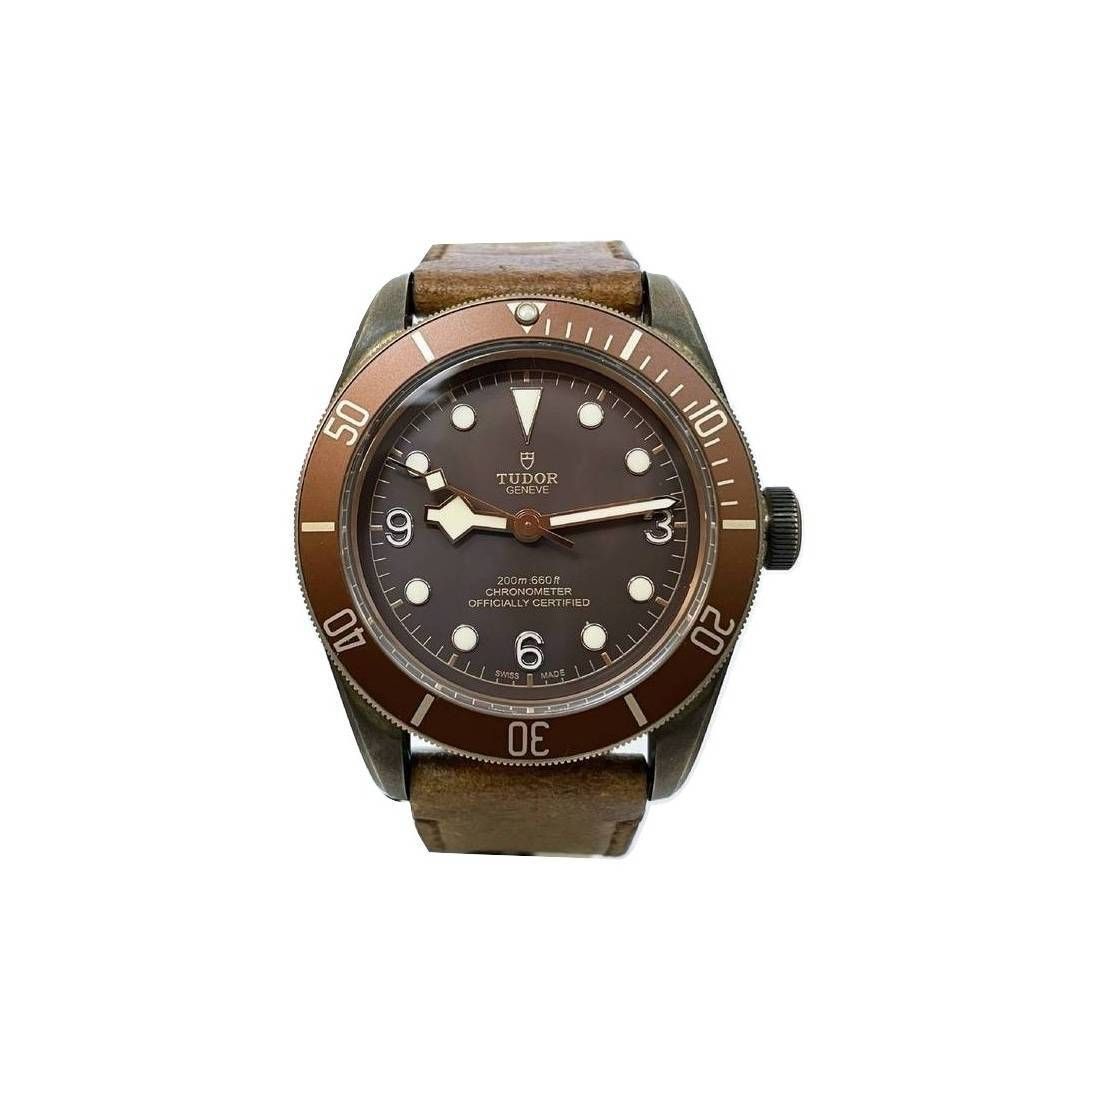 TUDOR BLACK BAY BRONZE TUDOR BLACK BAY BRONZE
Men's bronze wristwatch, circa 201&hellip;